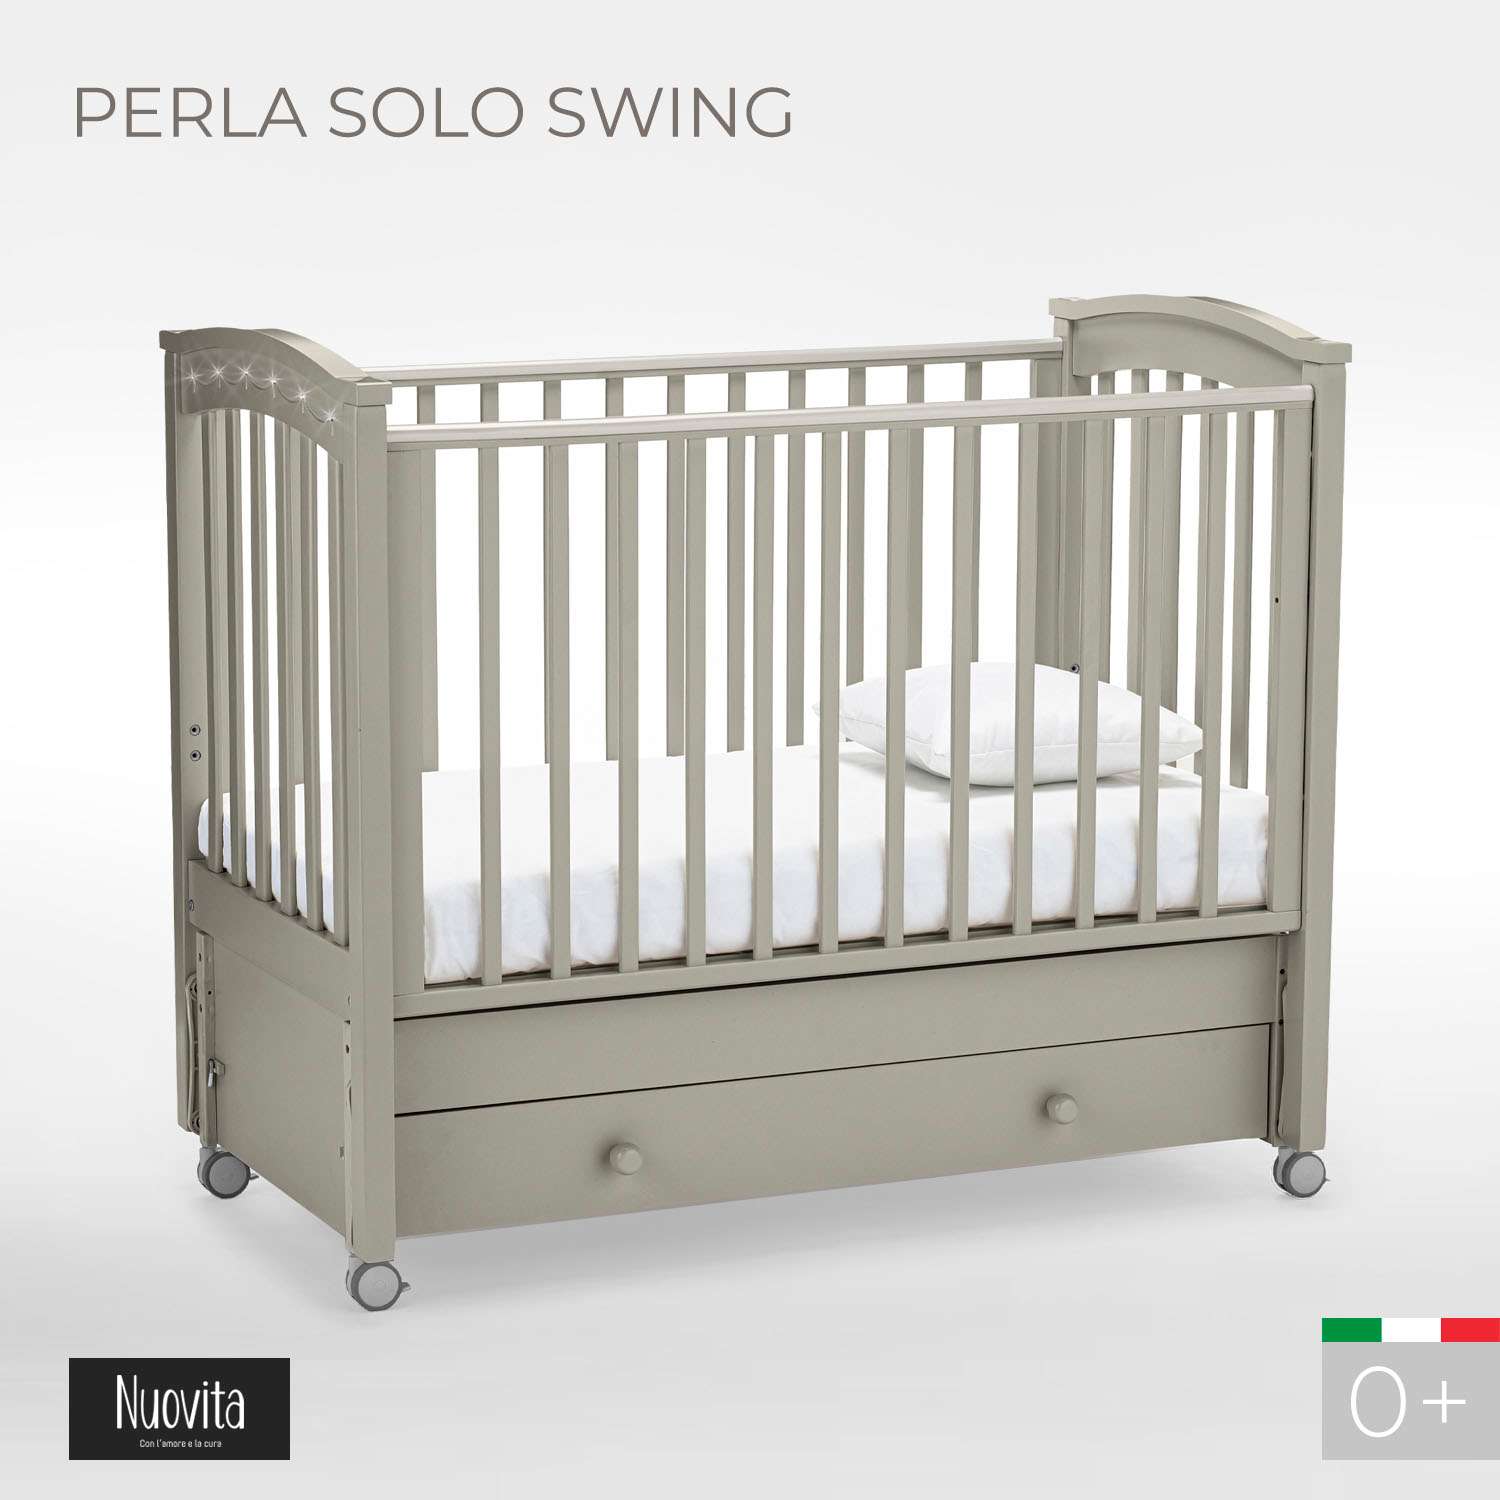 Детская кроватка Nuovita Perla Solo Swing прямоугольная, продольный маятник (серый) - фото 2